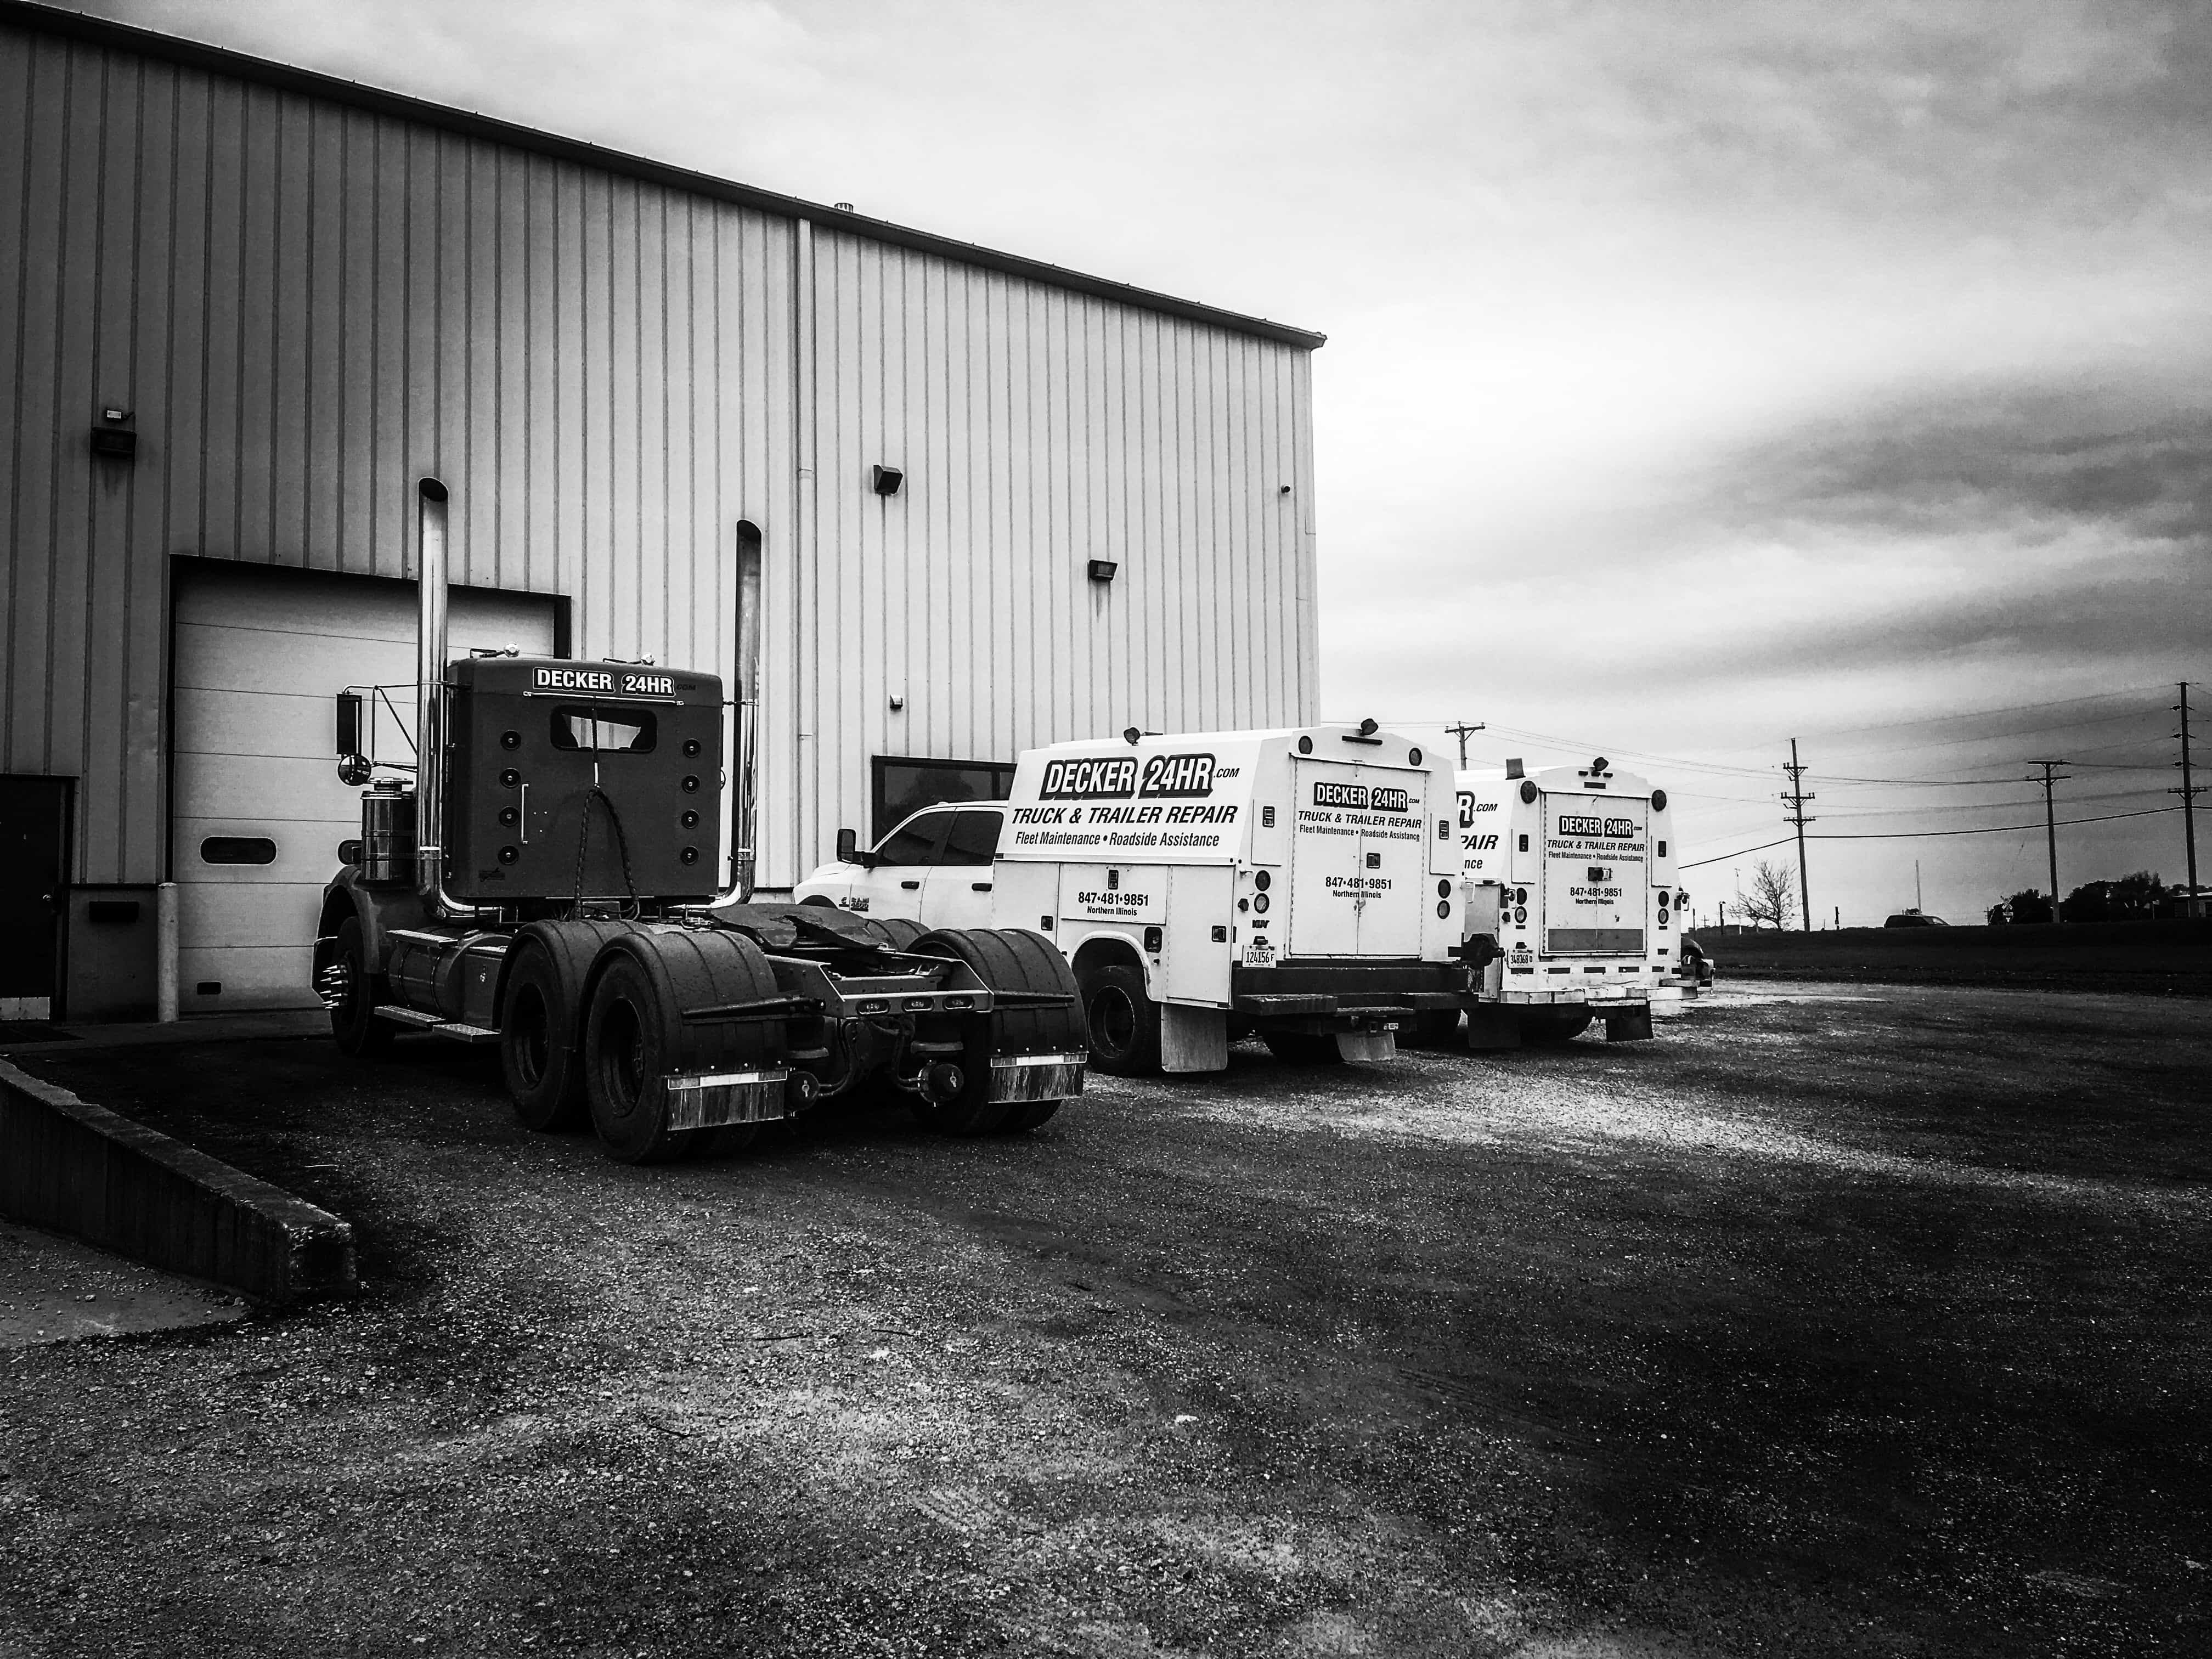 Decker 24hr Truck & Trailer - Belvidere, IL, US, truck repair near my location